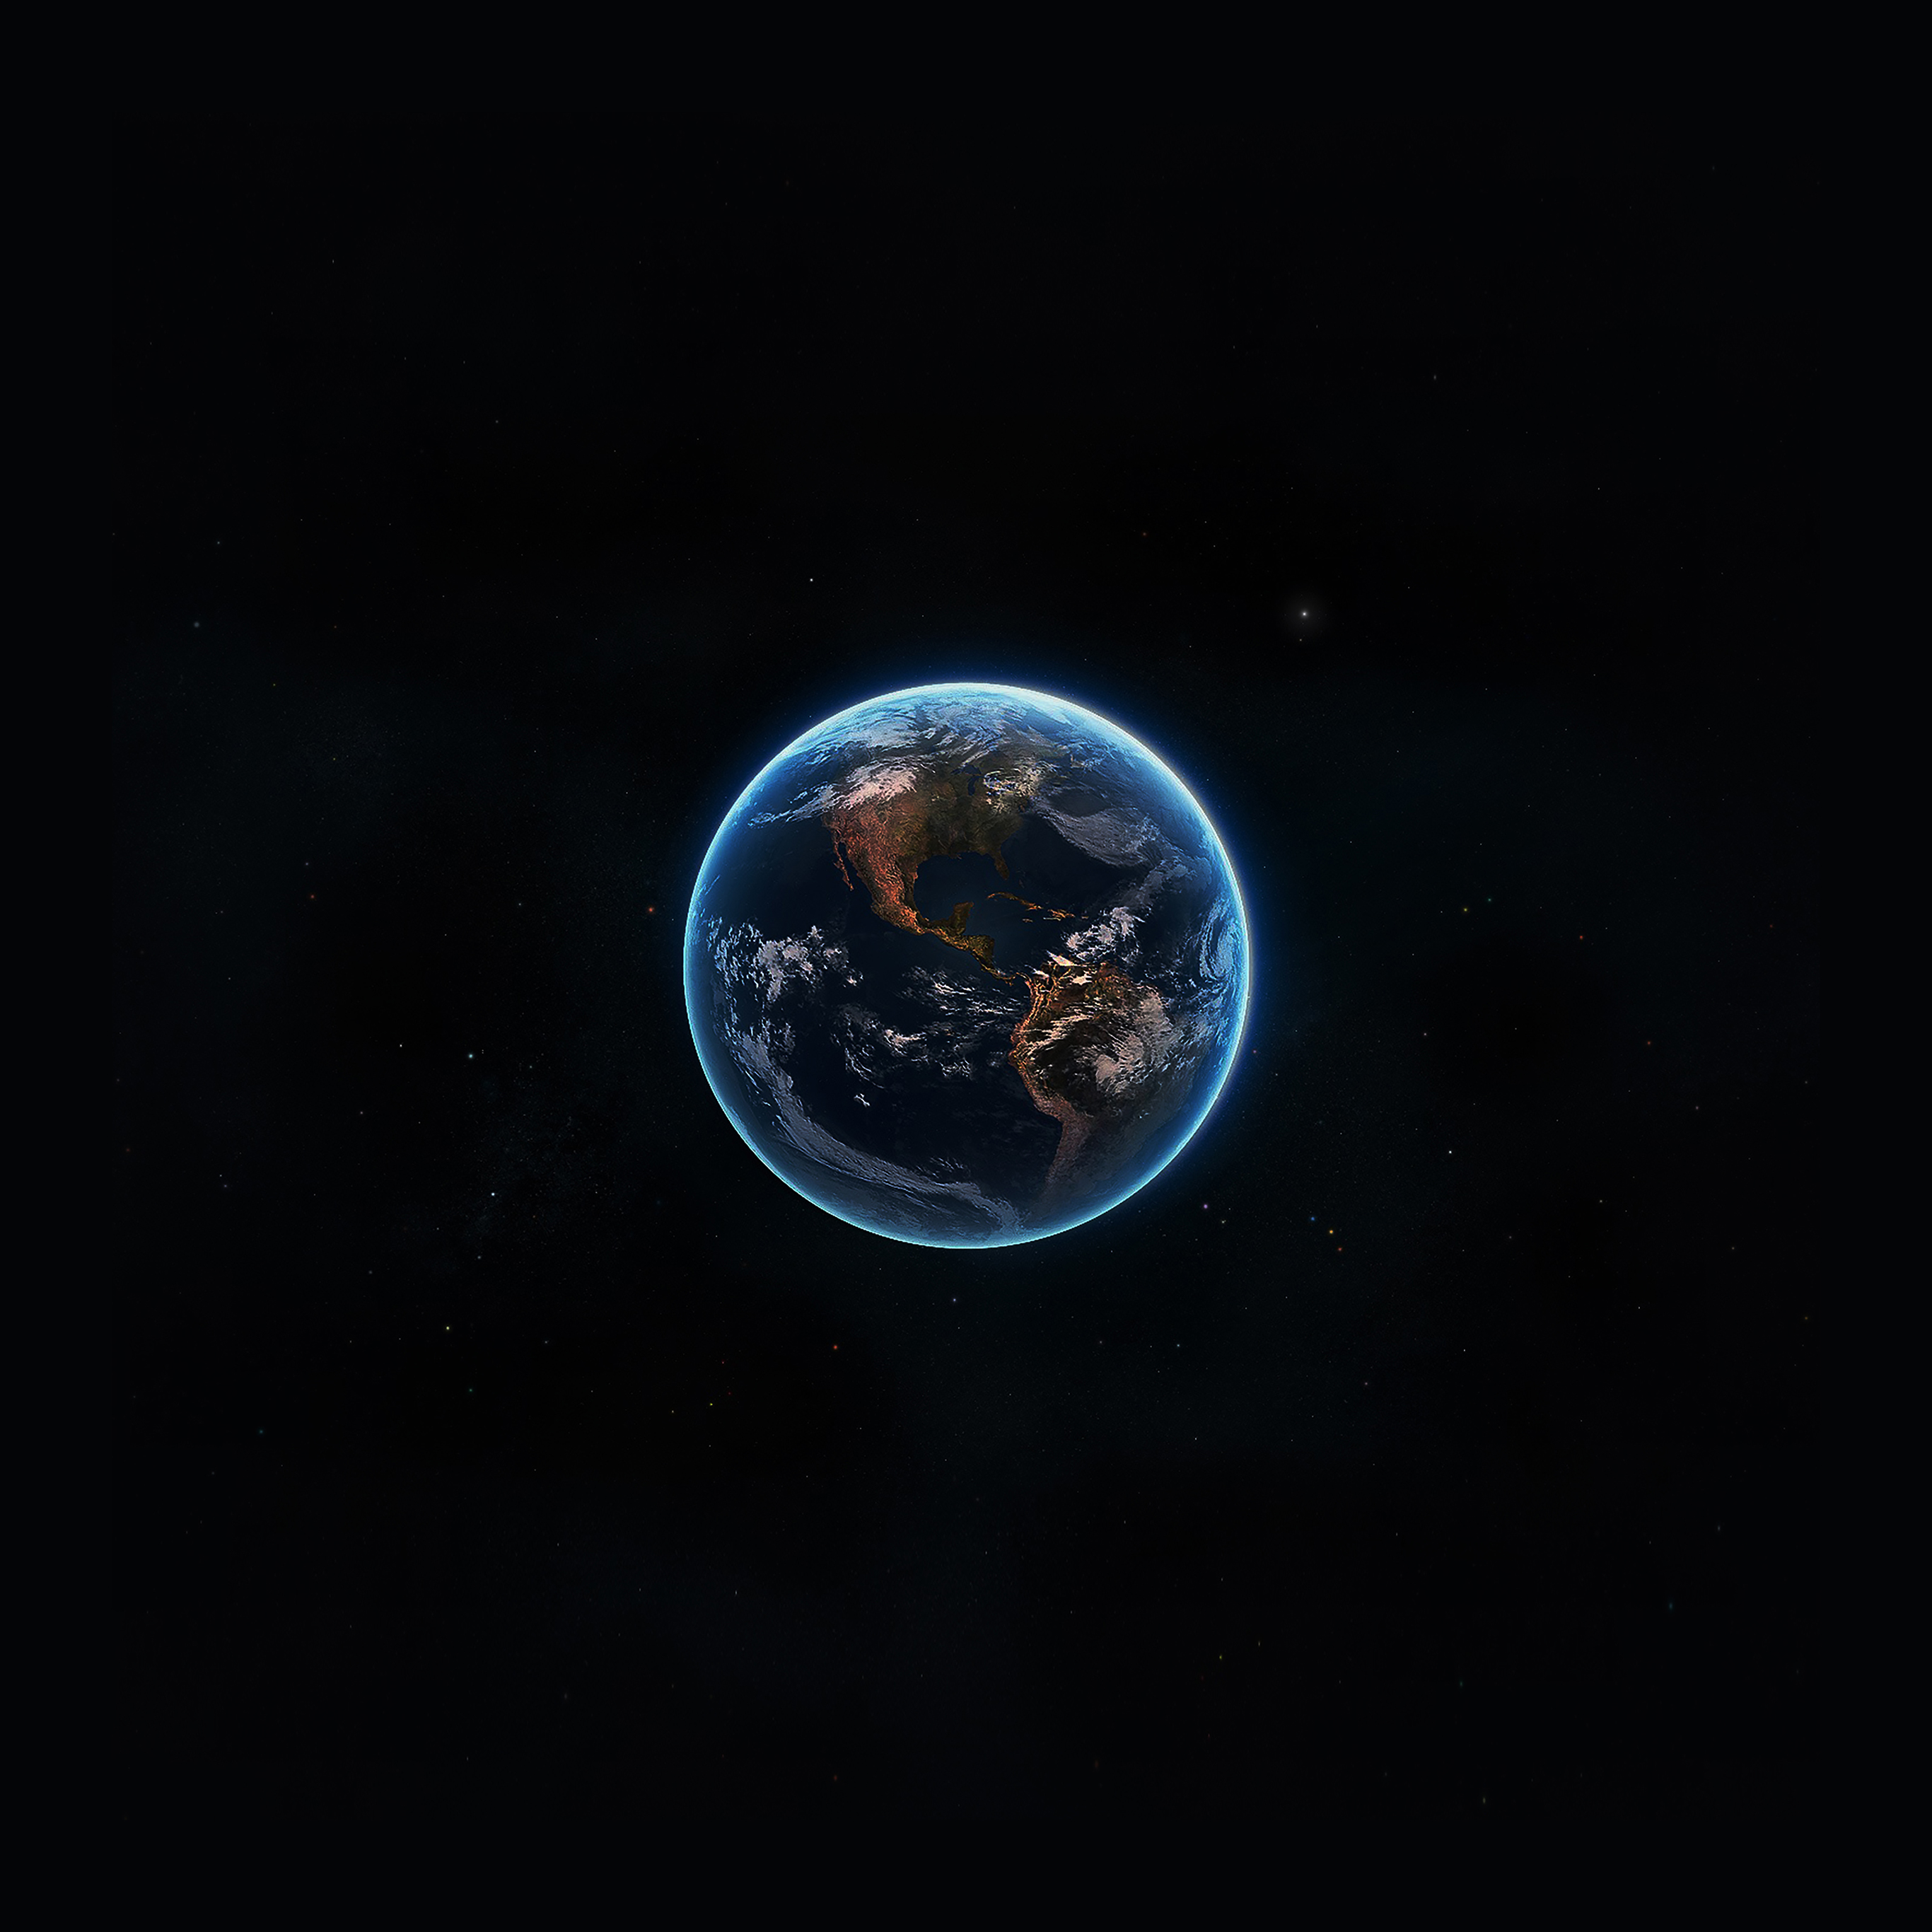 tierra fondos de pantalla android,tierra,planeta,objeto astronómico,atmósfera,espacio